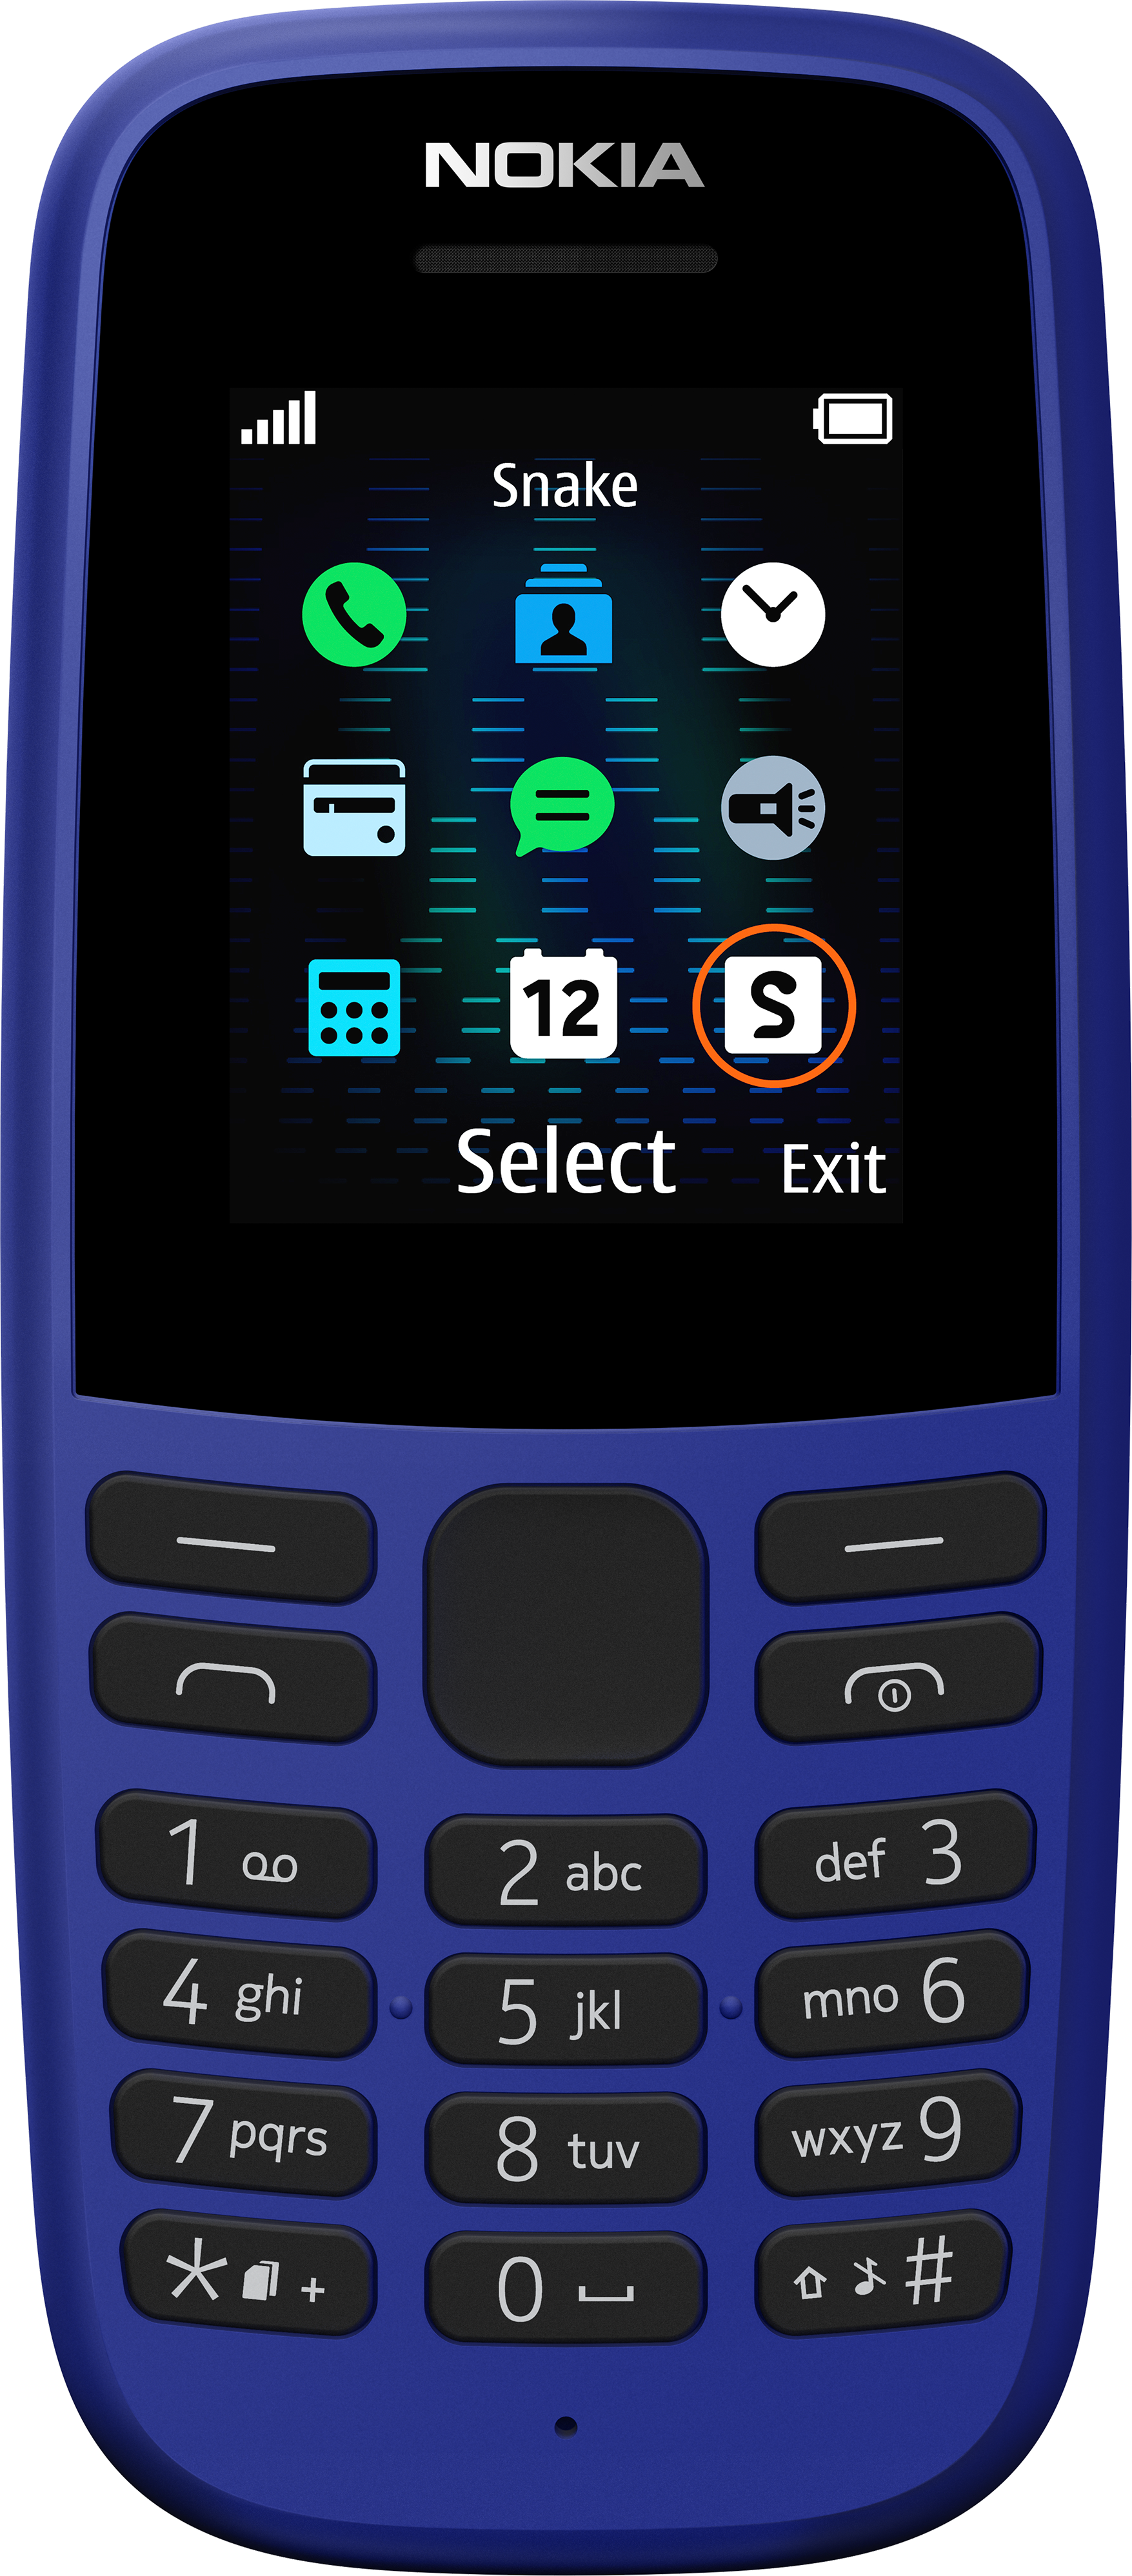 New model Nokia 105: “Thiết kế mới nhất từ Nokia đã ra mắt, với hiệu năng tốt, pin lâu dài và giá cả phải chăng. New model Nokia 105 sẽ là lựa chọn hoàn hảo để đáp ứng nhu cầu của bạn. Hãy xem hình ảnh để tìm hiểu thêm.”